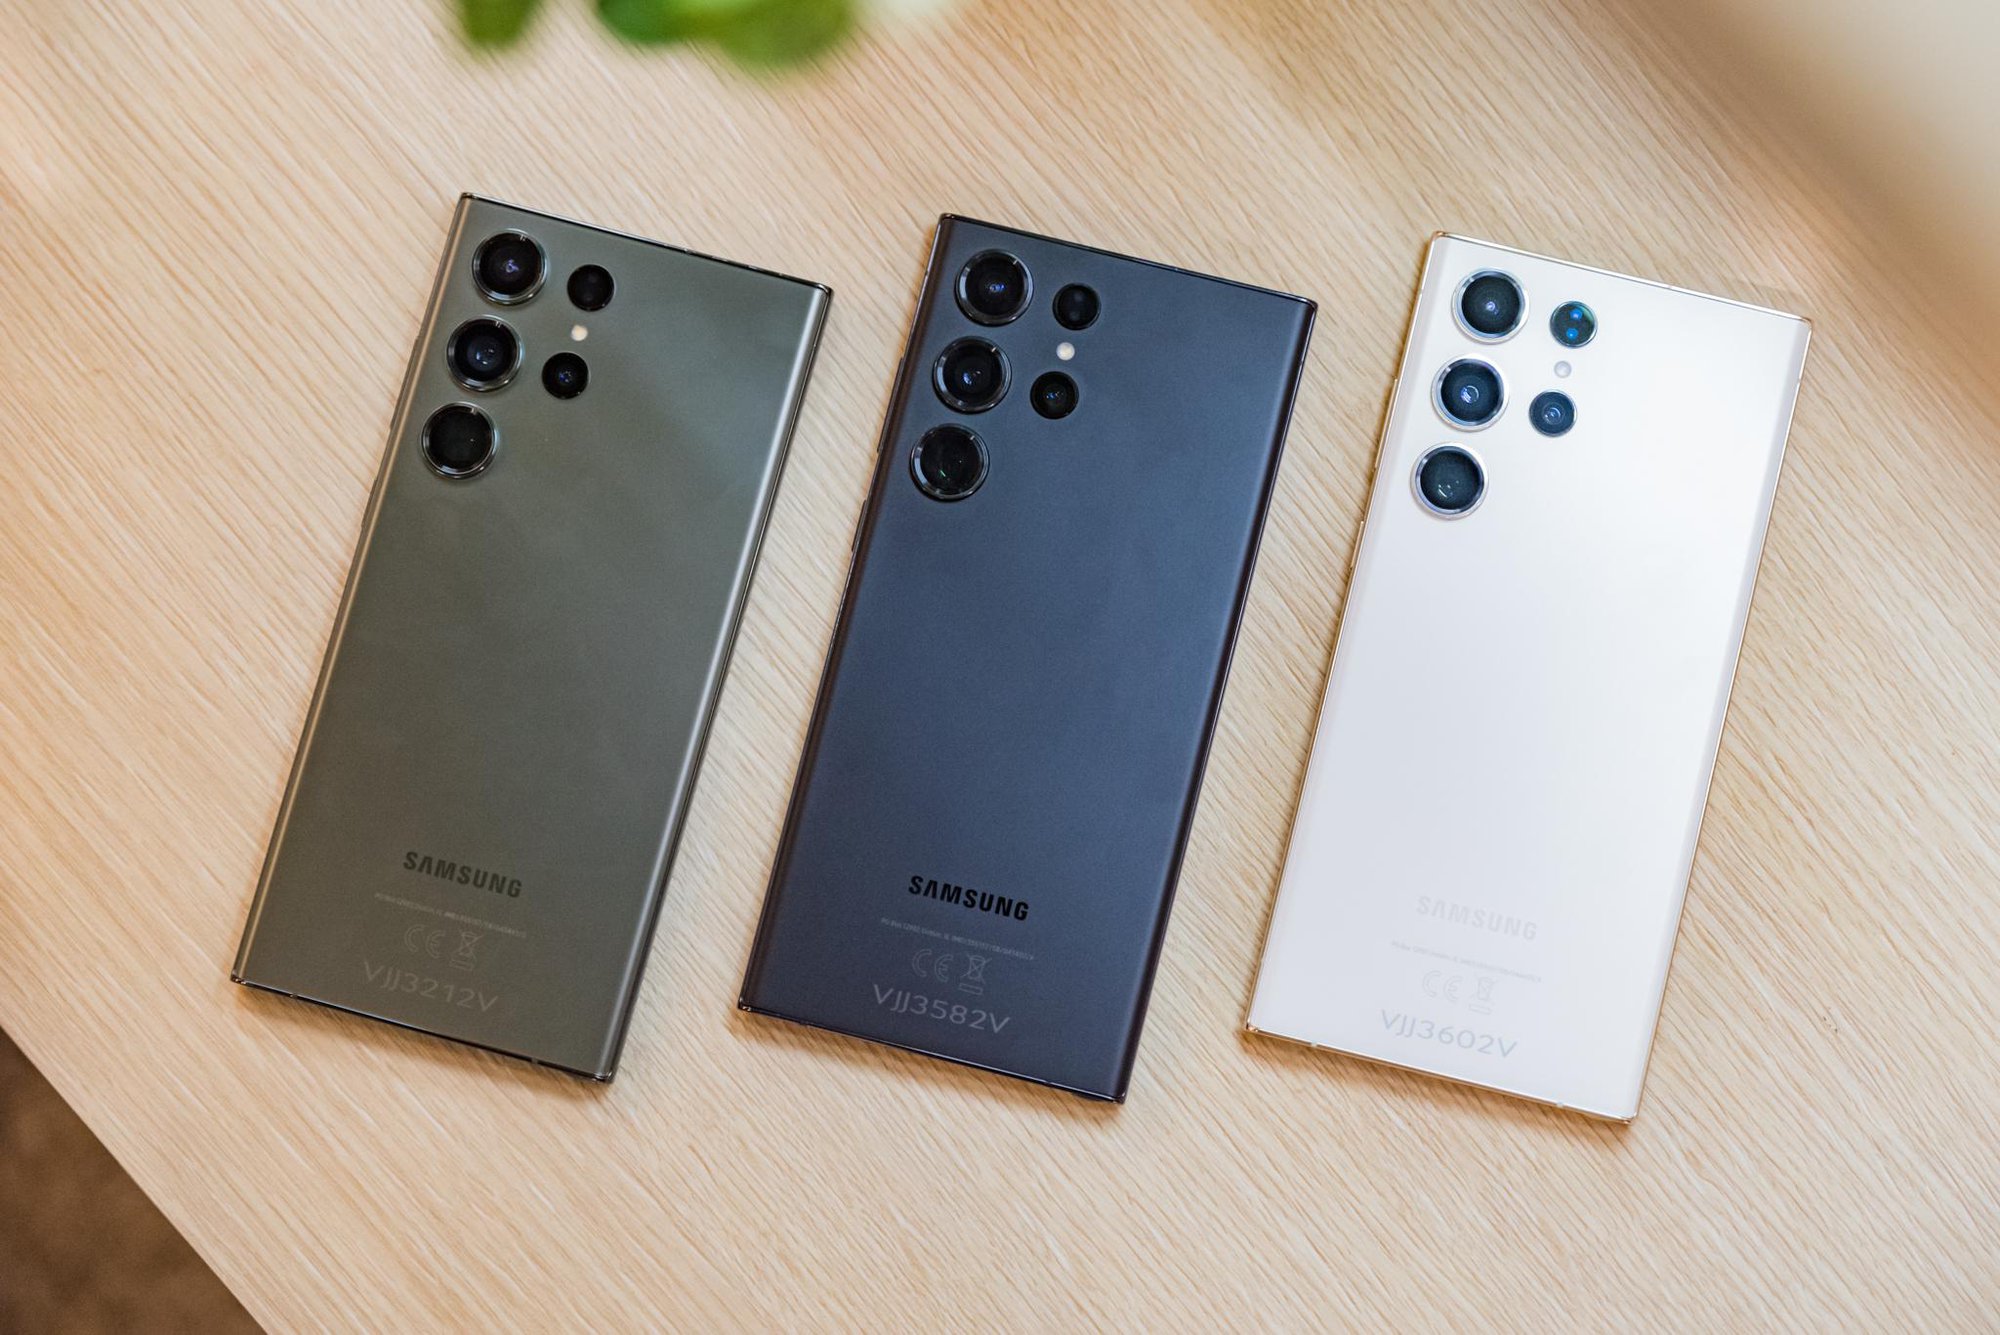 Đỉnh cao chụp ảnh trong đêm triệu like, Galaxy S23 Ultra chính là chiếc smartphone mà bạn mong đợi - Ảnh 6.